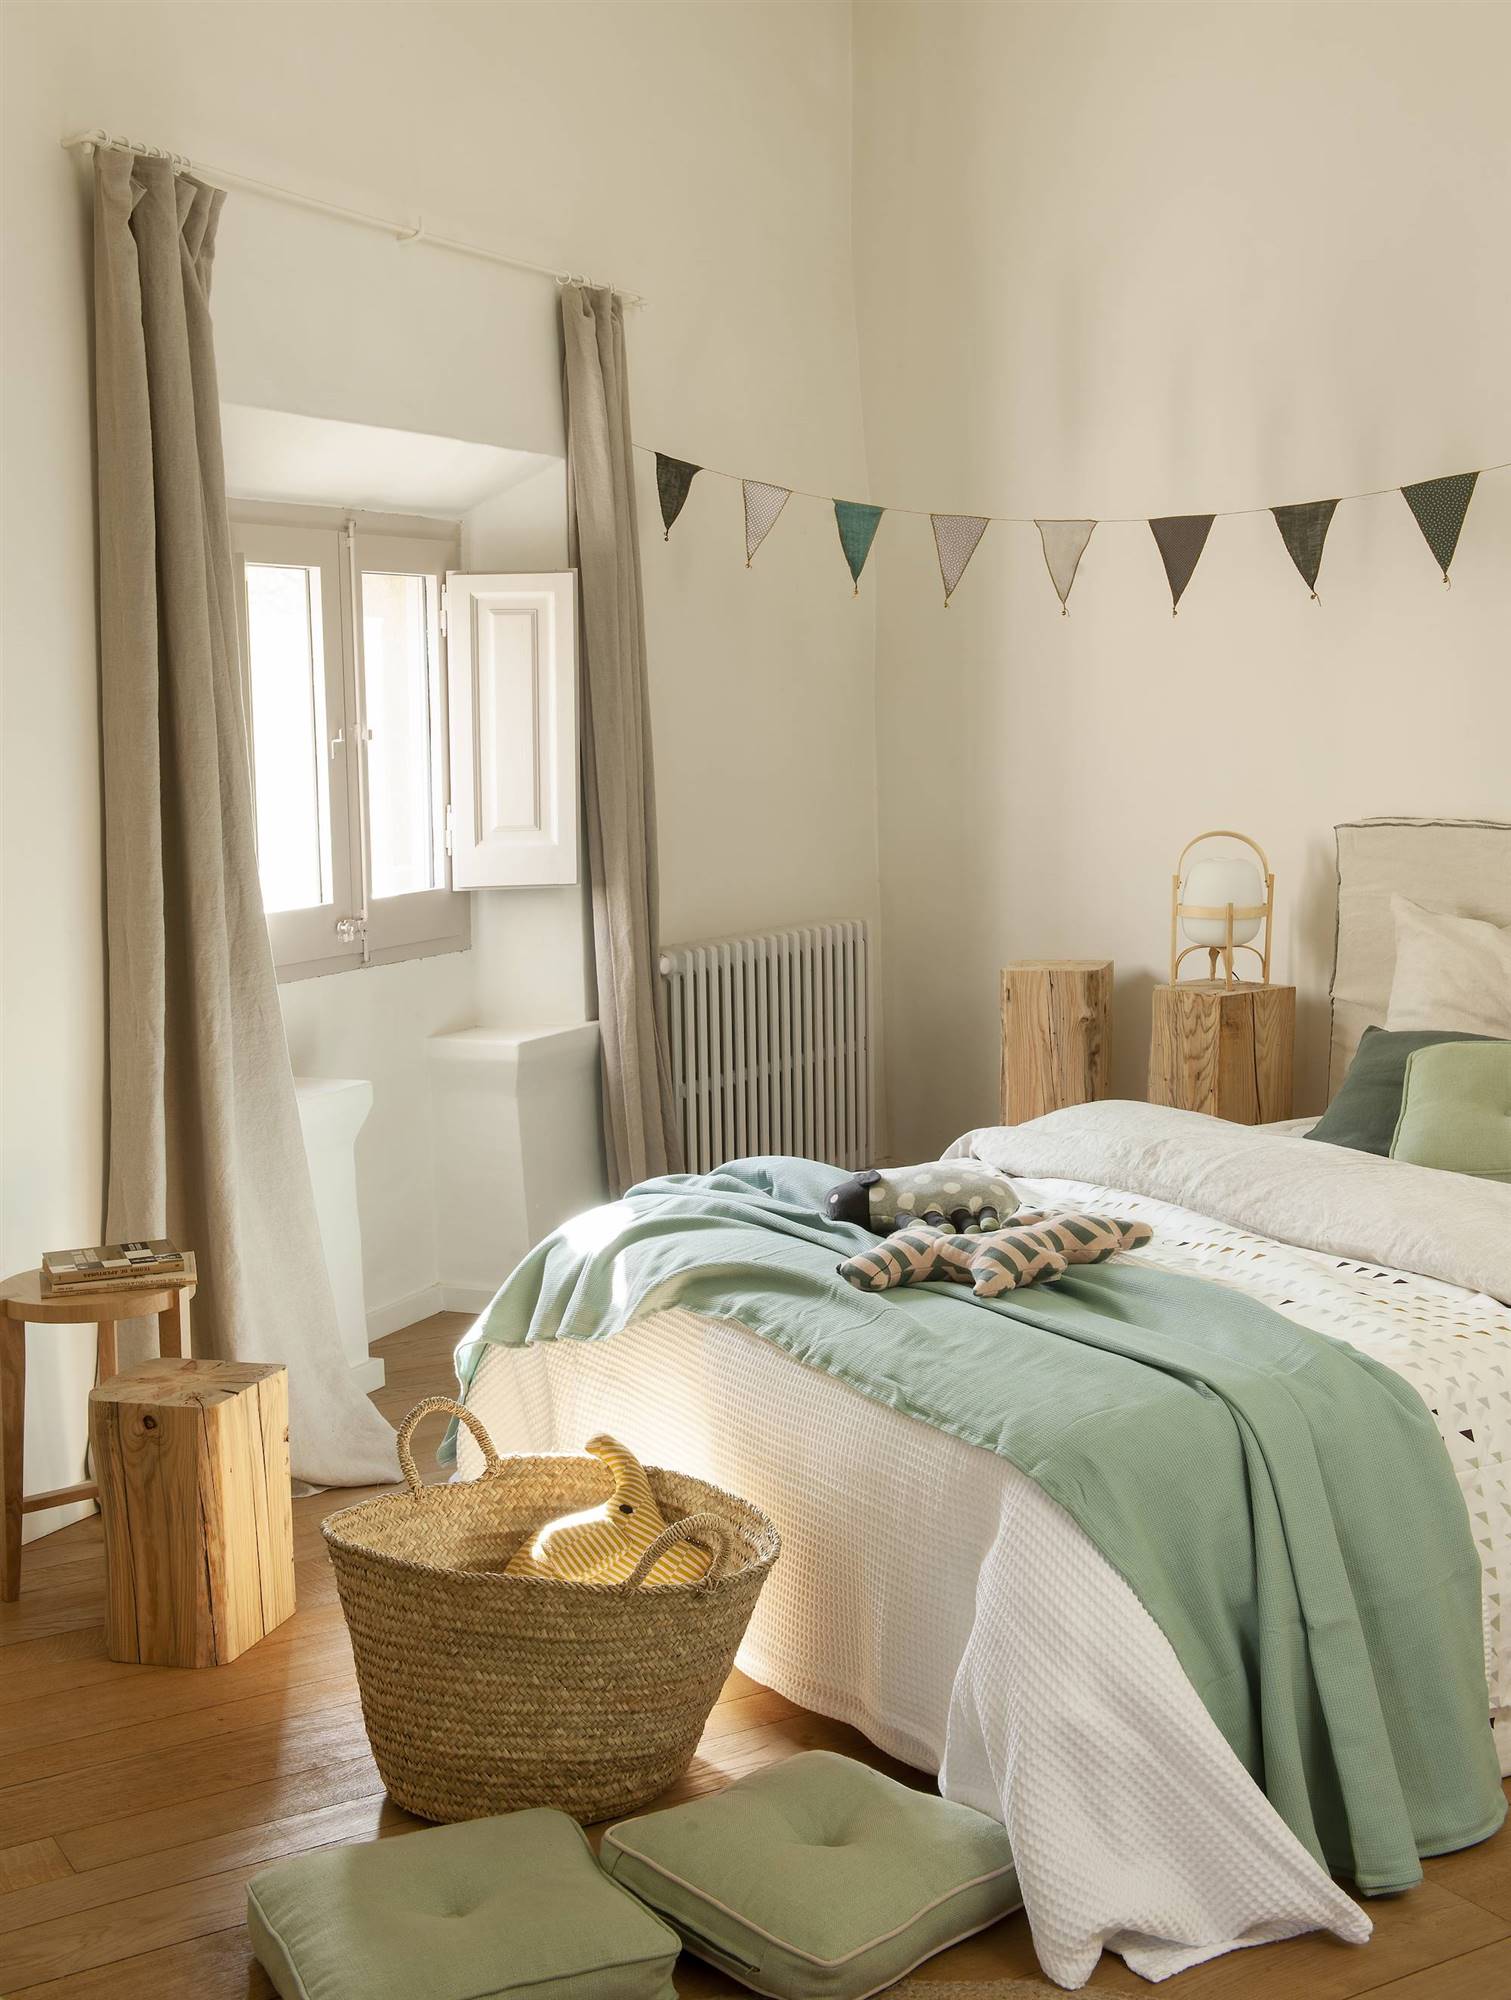 Dormitorio juvenil con madera y fibra, cama grande y ropa de cama color verde menta.